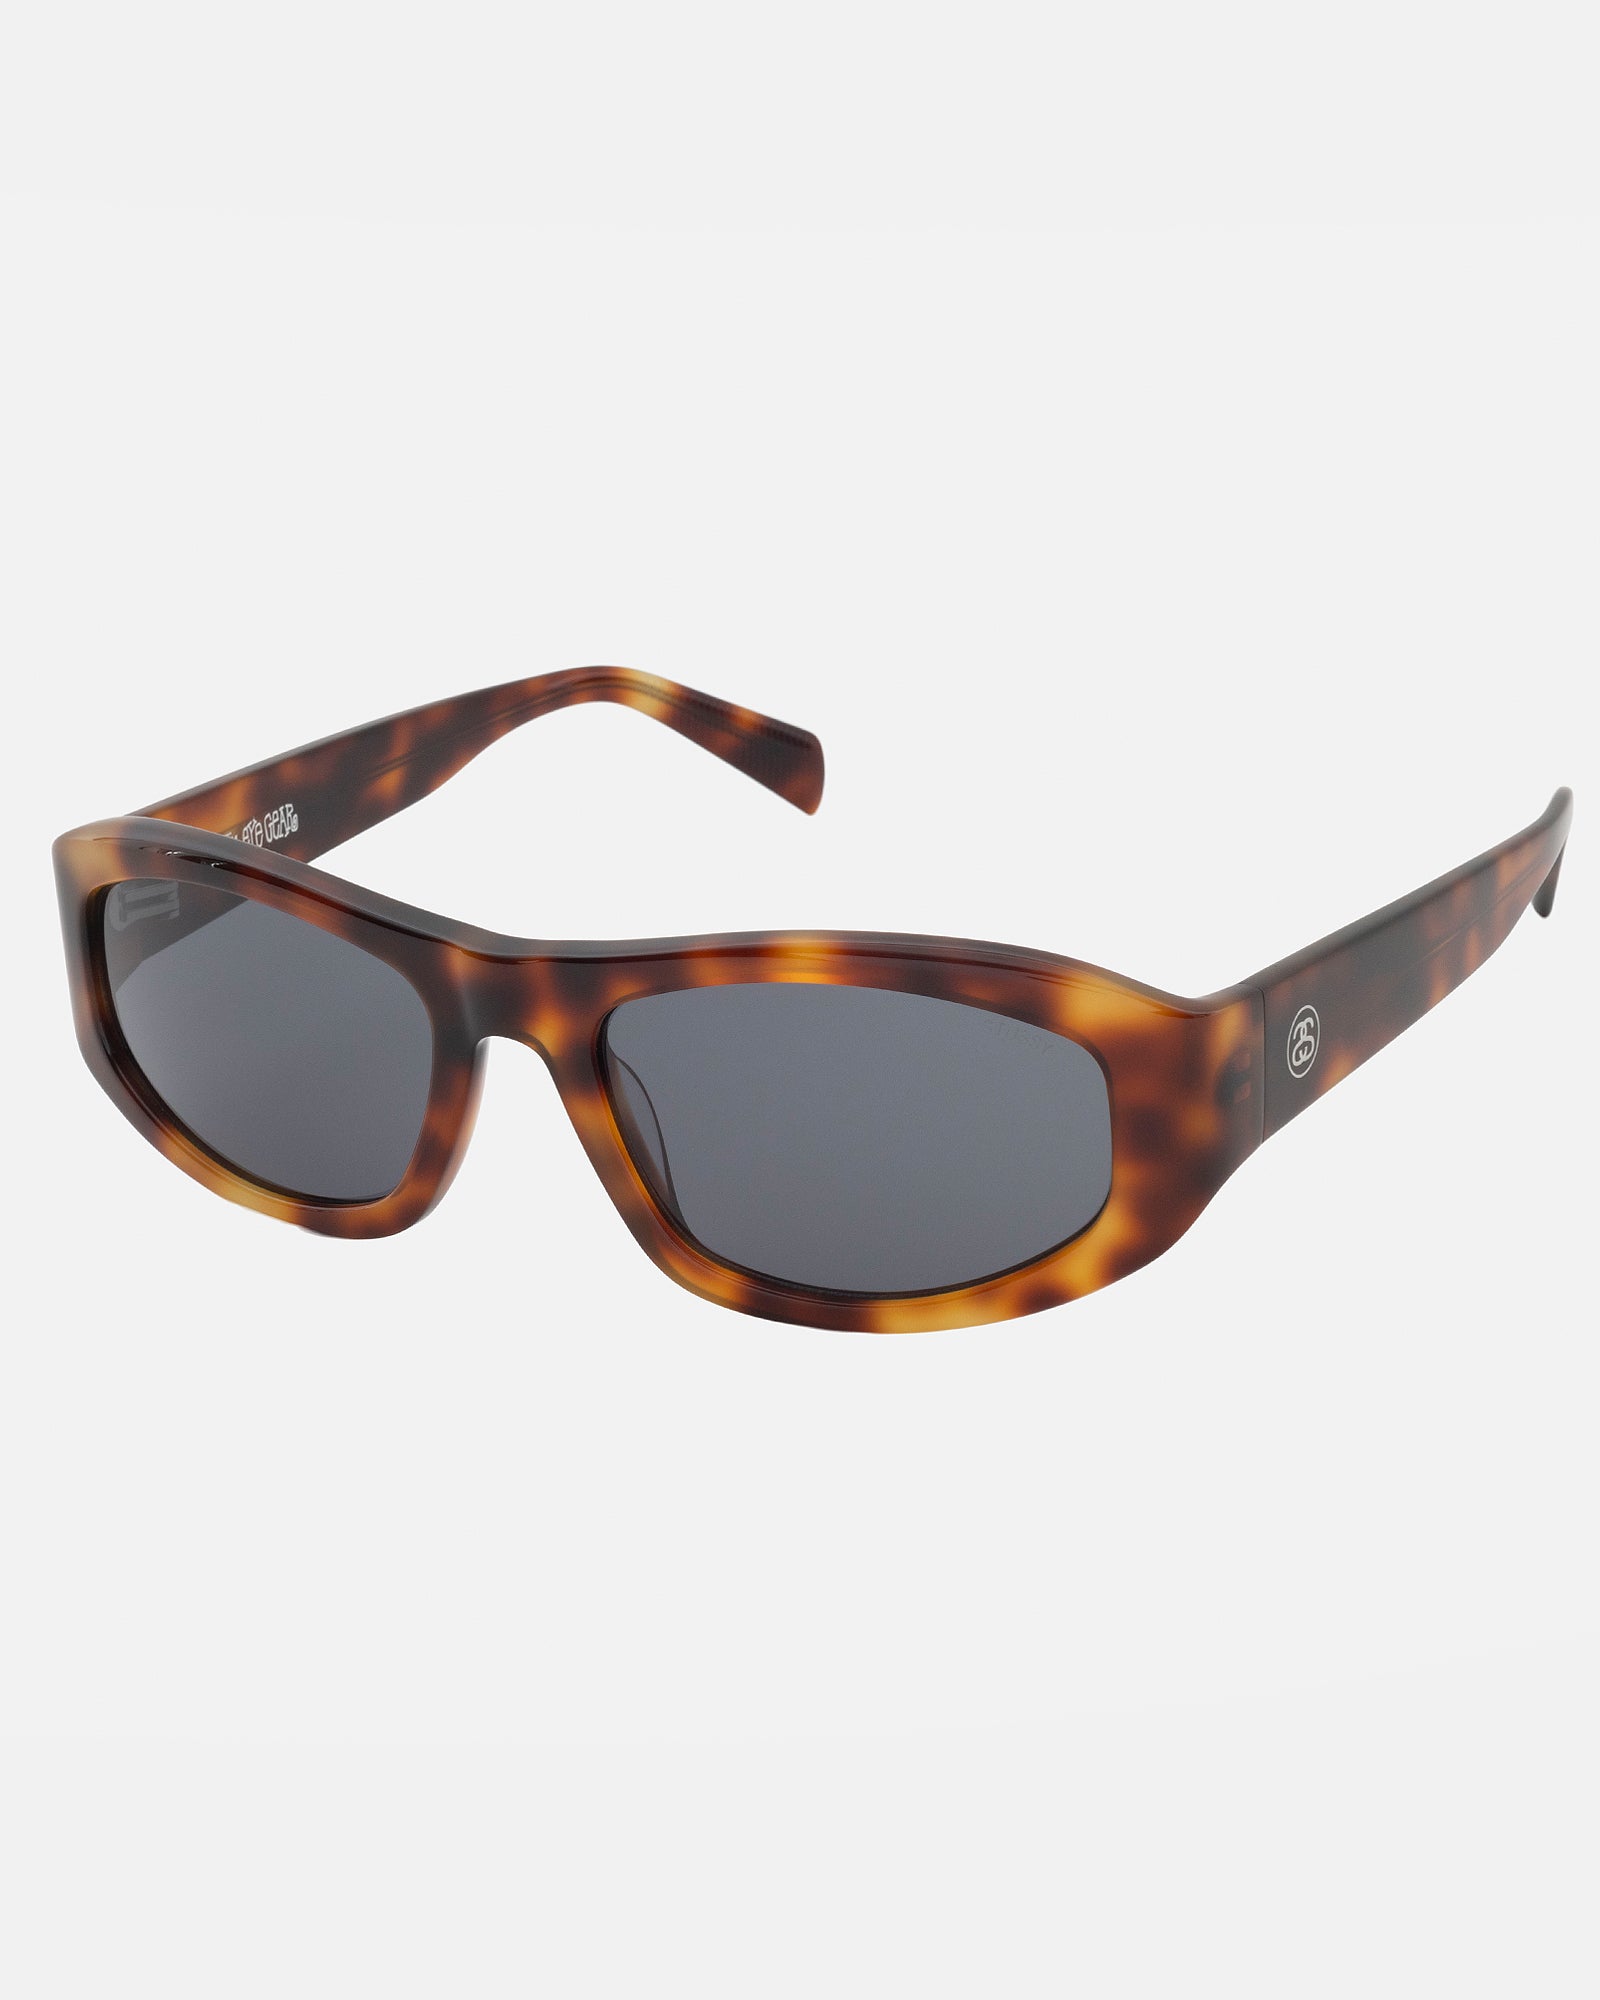 Landon Sunglasses in tortoise / black – Stüssy Europe